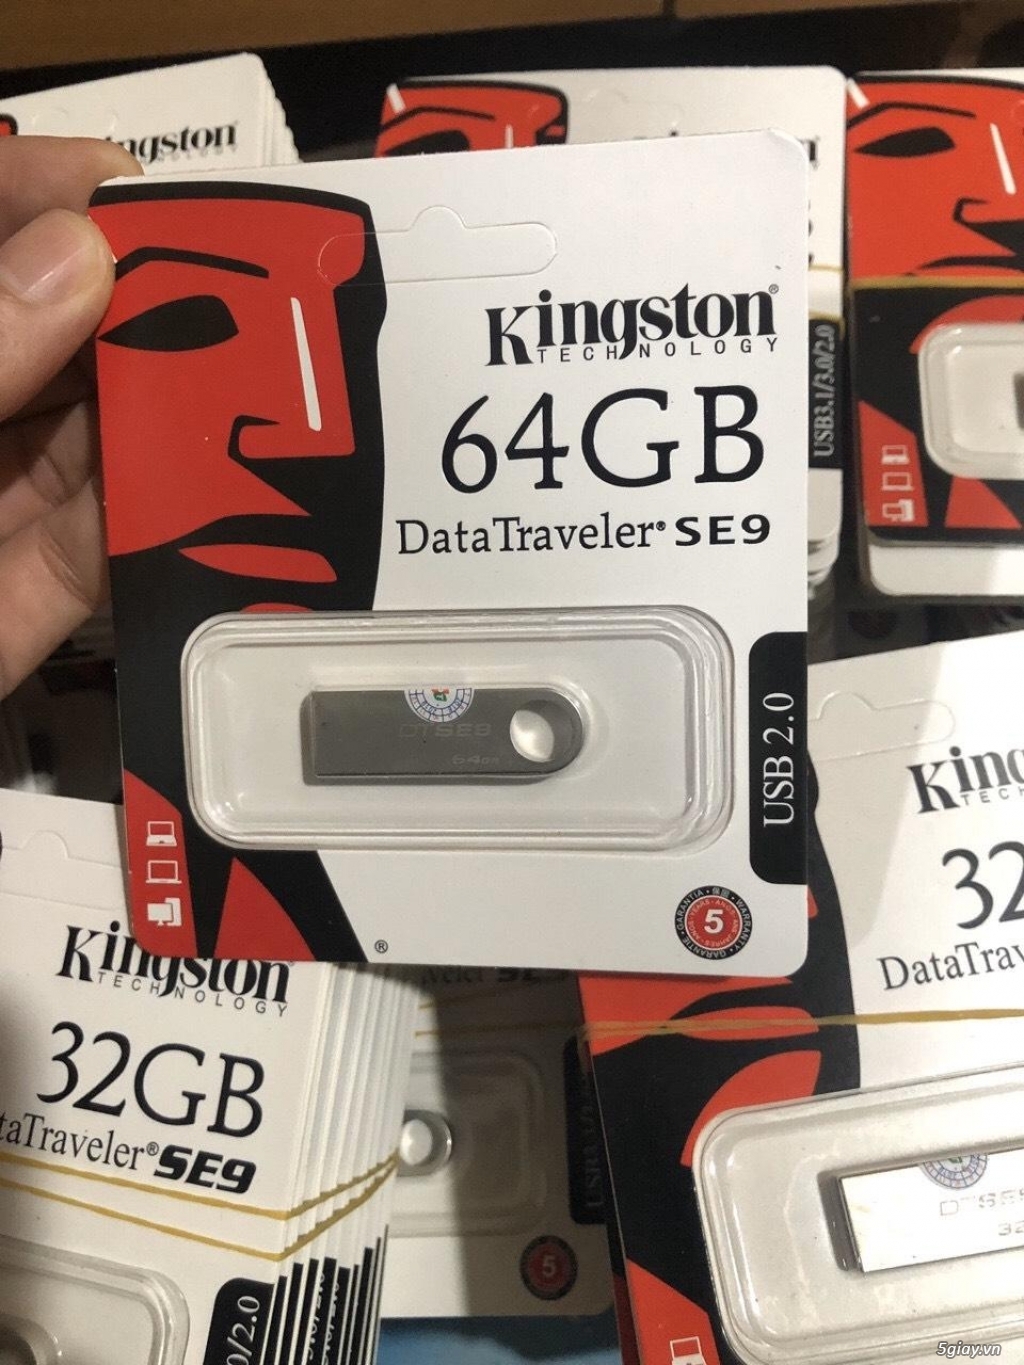 USB Kingston 4G,8G,16G,32G,64G,128G DTSe9 BH 2N Giá Rẻ!!! - 2